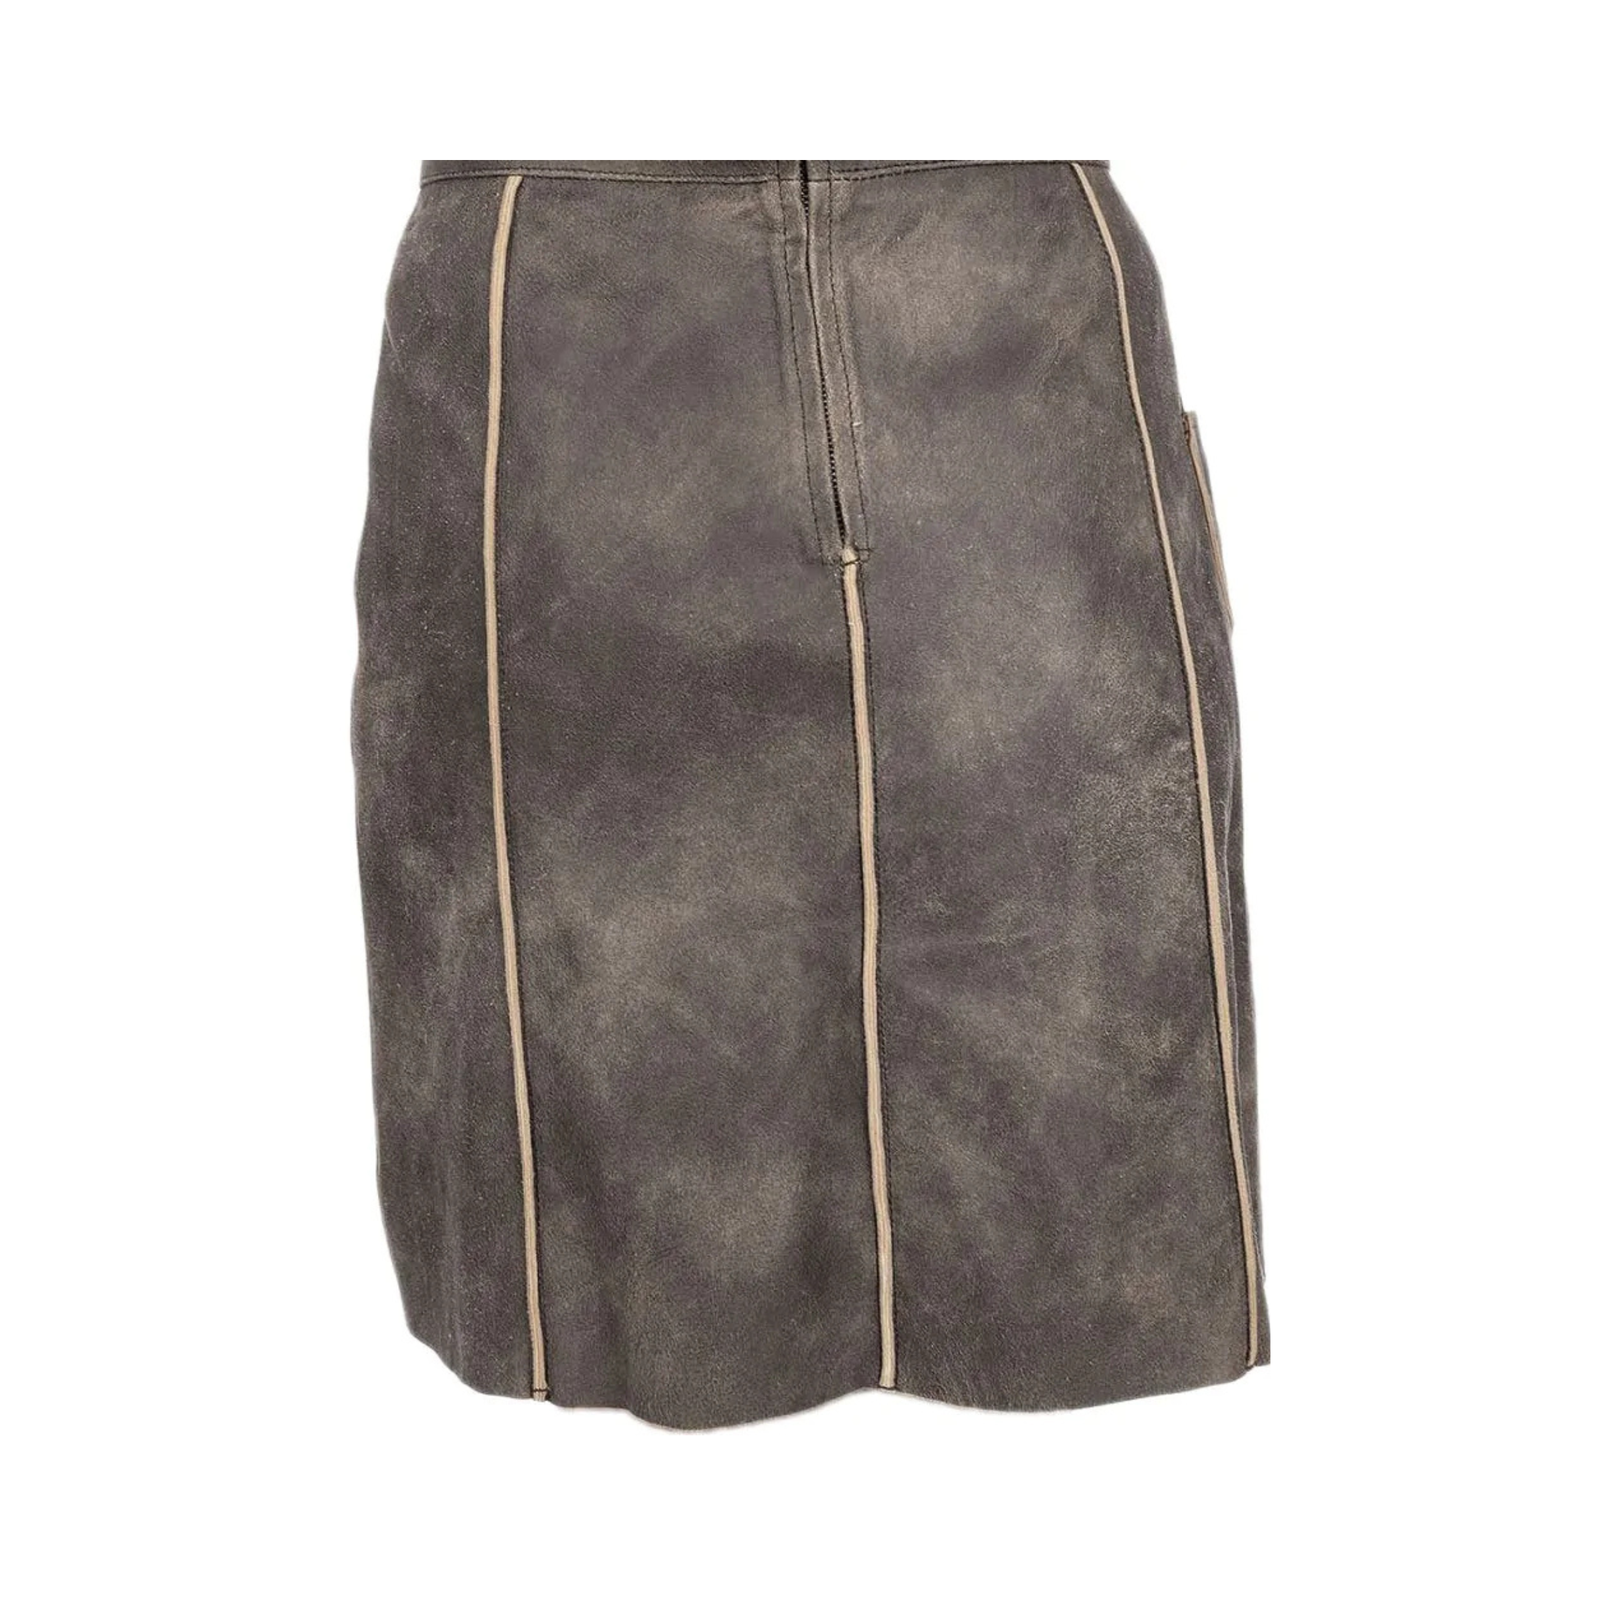 authentic-lederhosen-skirt-lederhosen-women's-outfit-back